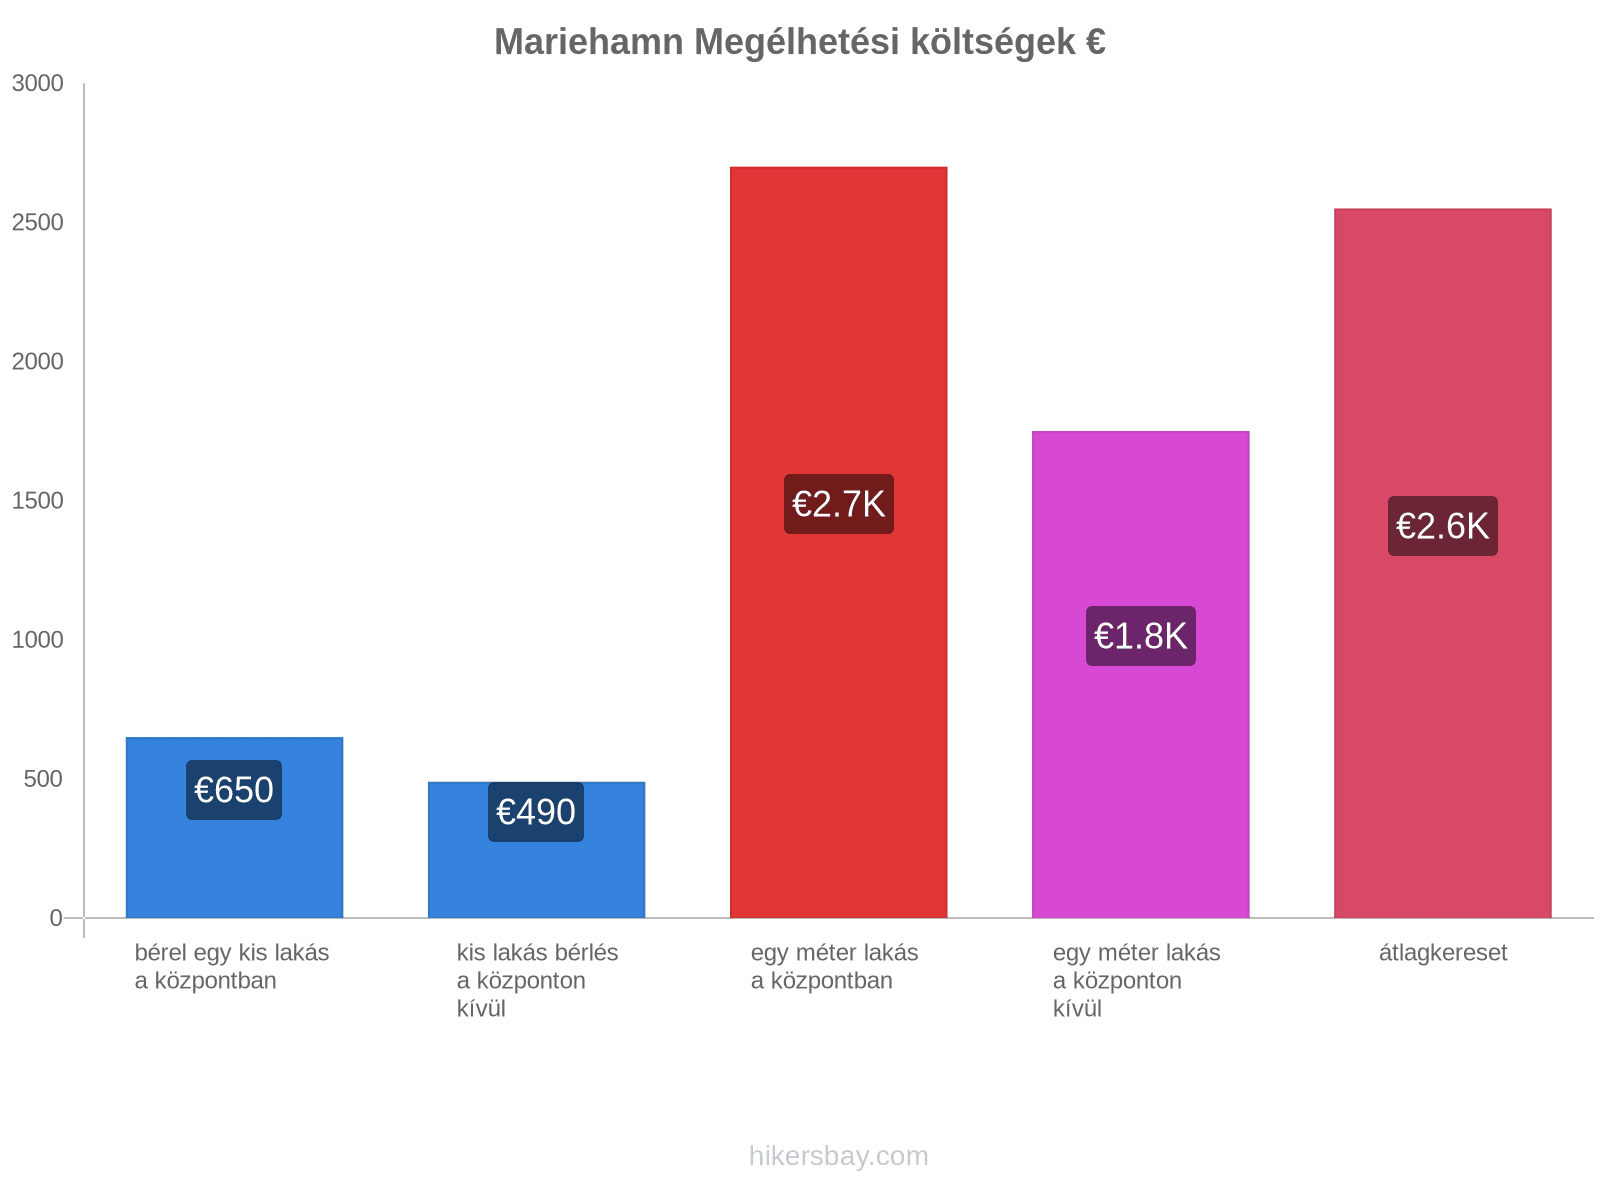 Mariehamn megélhetési költségek hikersbay.com